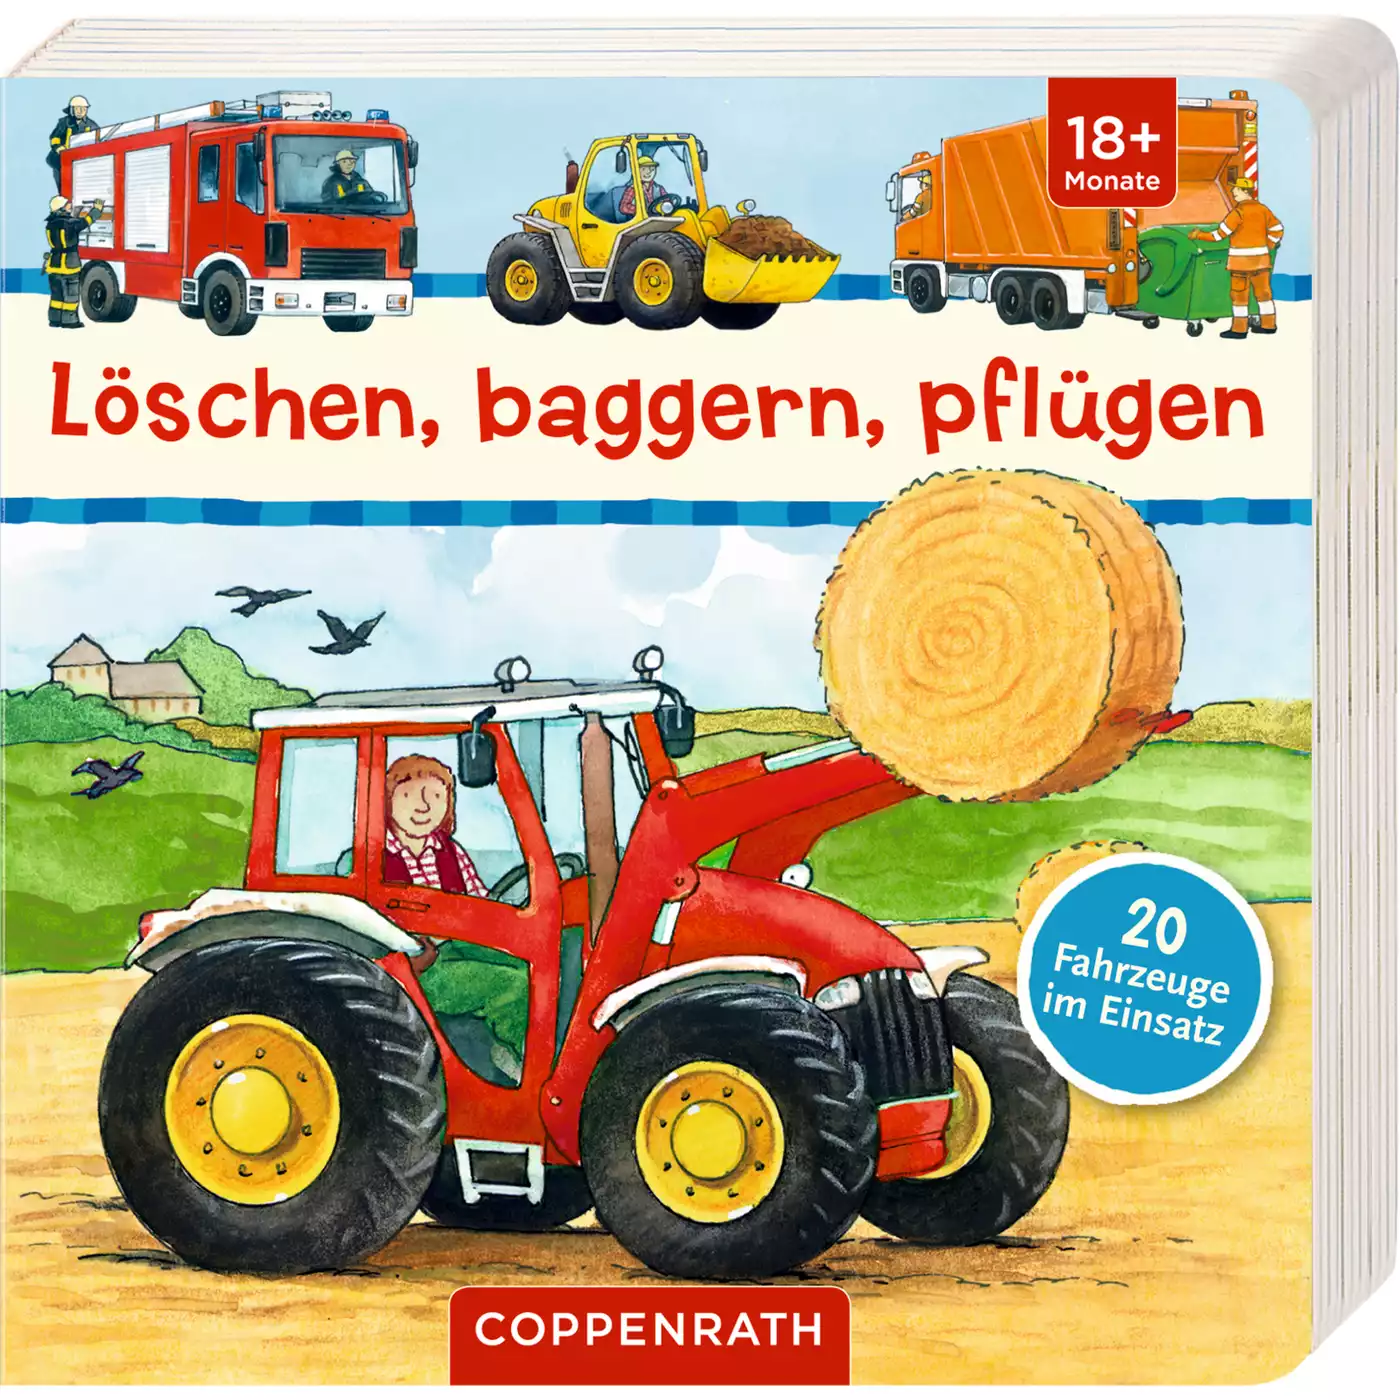 Löschen, baggern, pflügen COPPENRATH 2000566716504 1